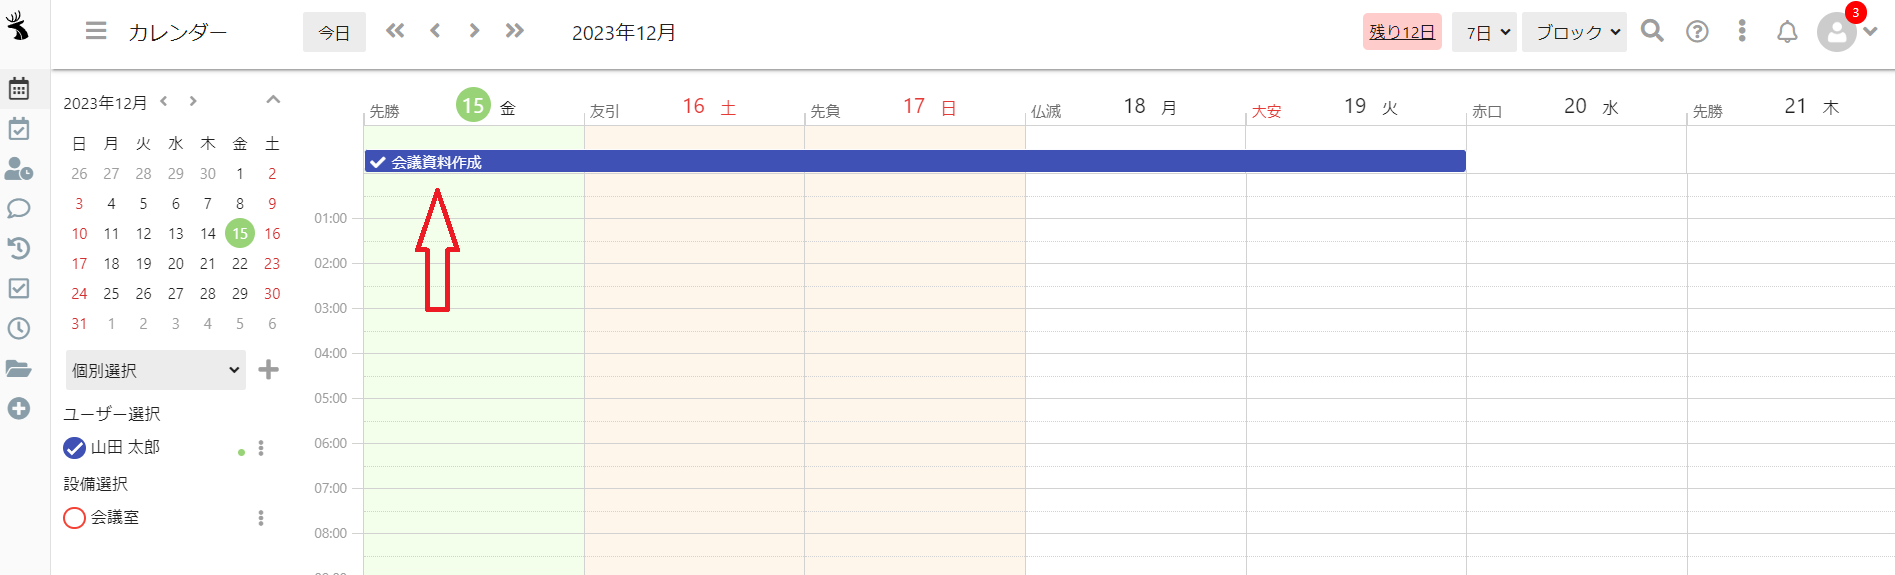 クロジカスケジュール管理で入力したToDoがカレンダーに反映されている画面